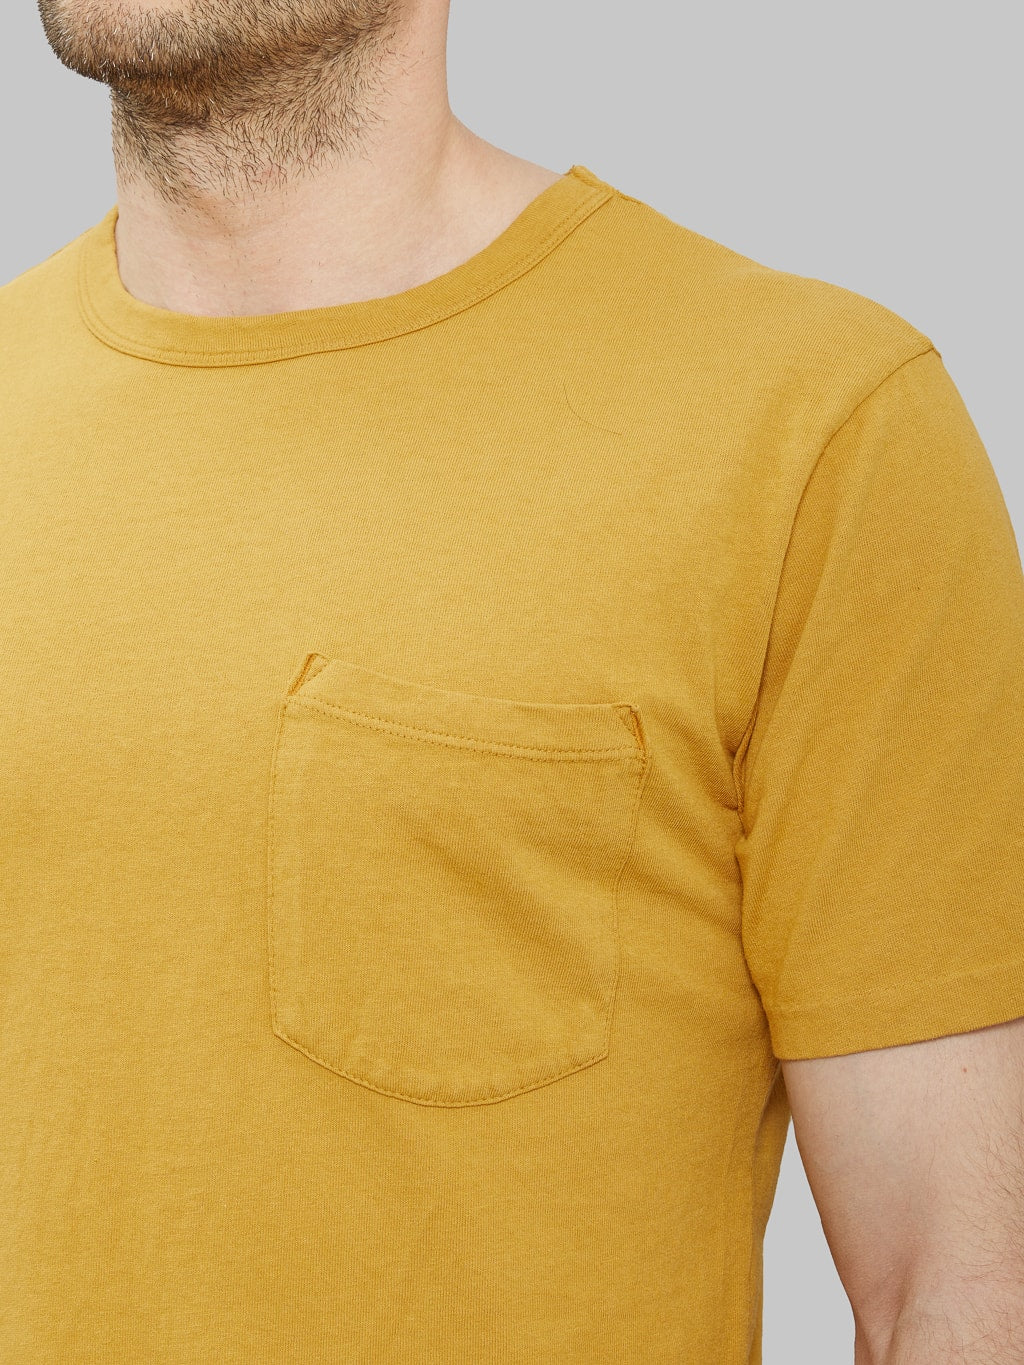 freenote cloth 9 ounce pocket t shirt mustard heavyweight chest details